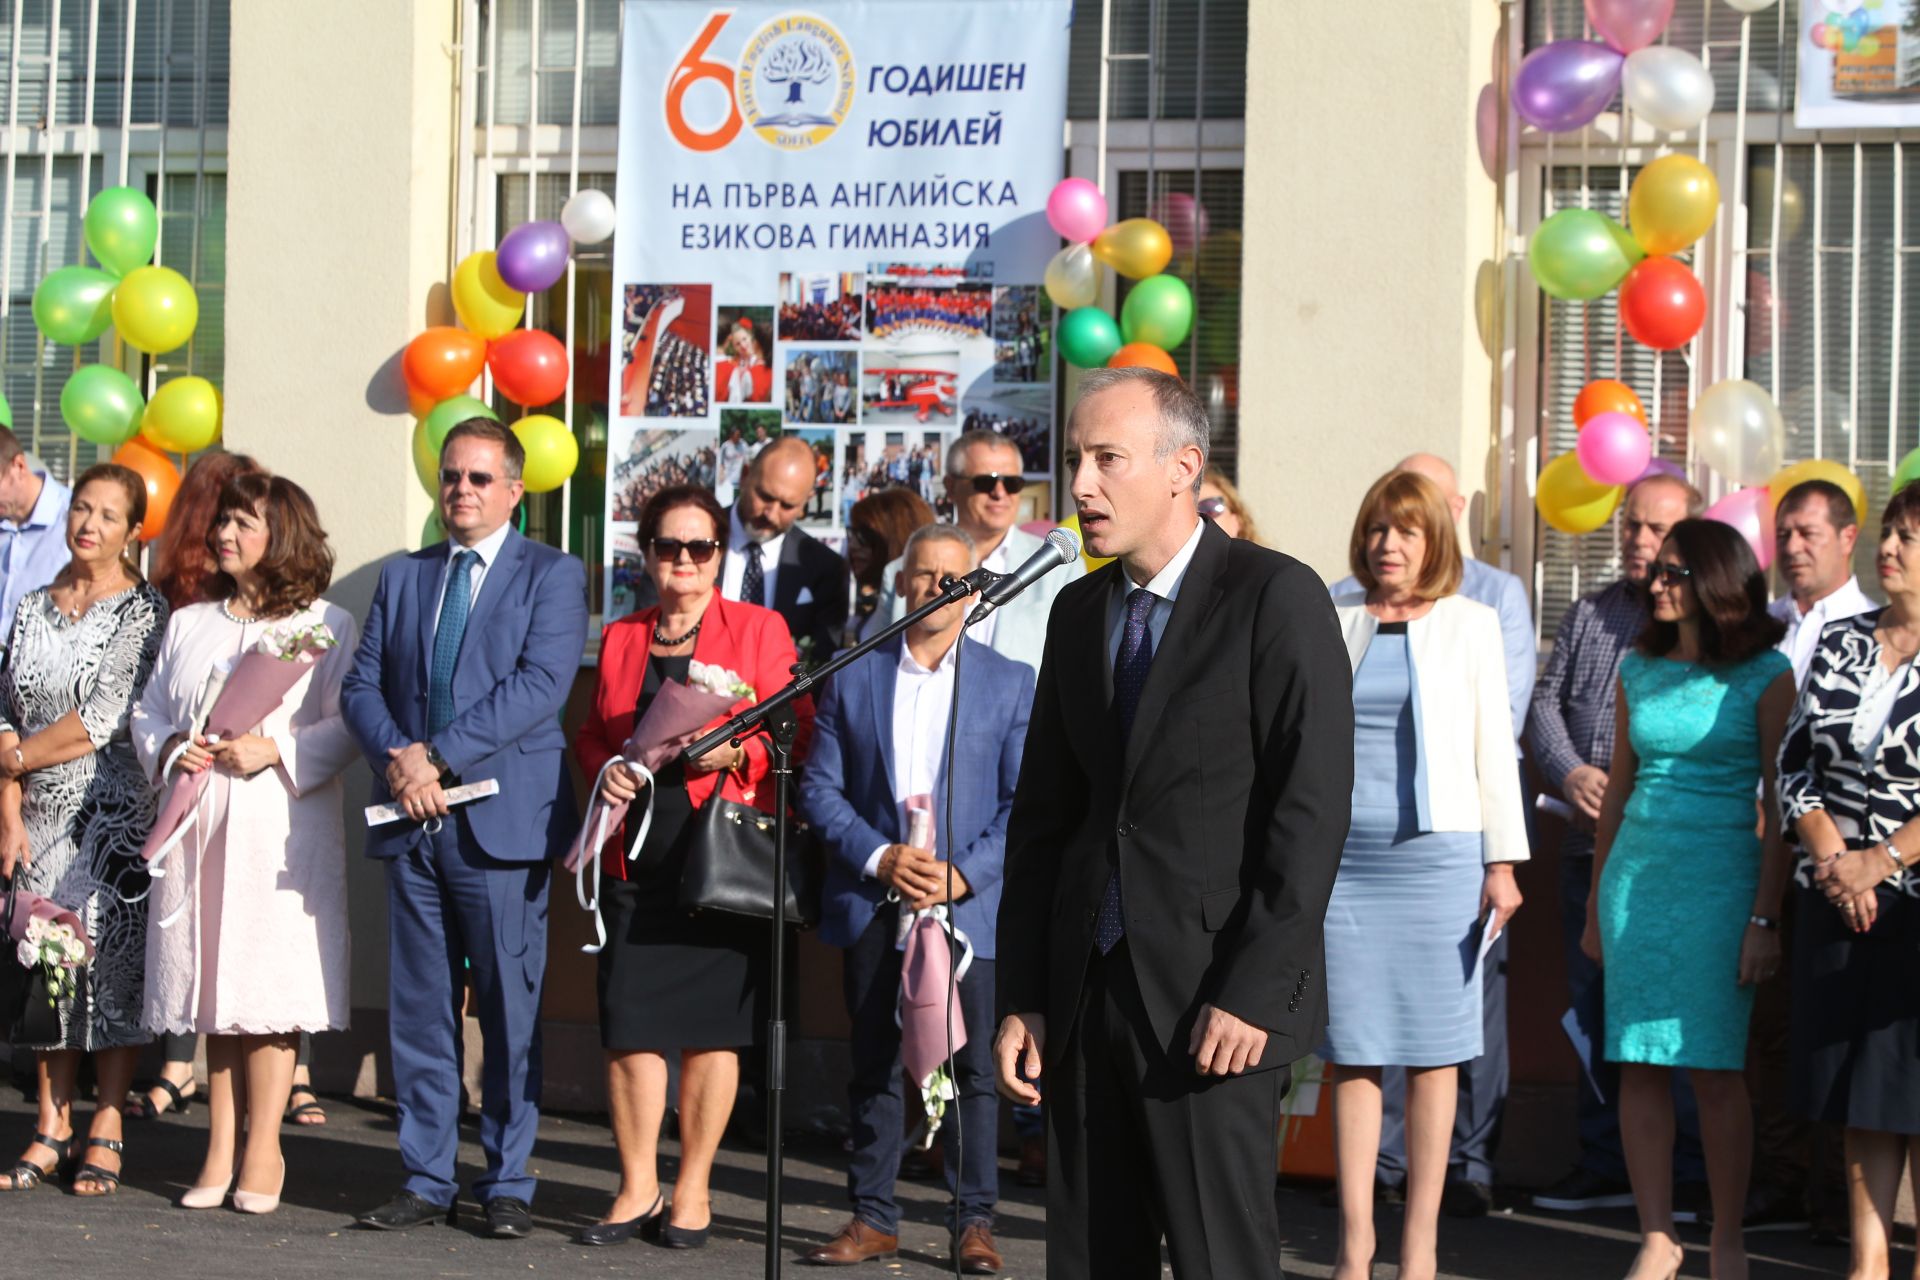 Министърът на образованието Красимир Вълчев открива новата учебната година в Първа английска гимназия и 112 основно училище „Стоян Заимов“